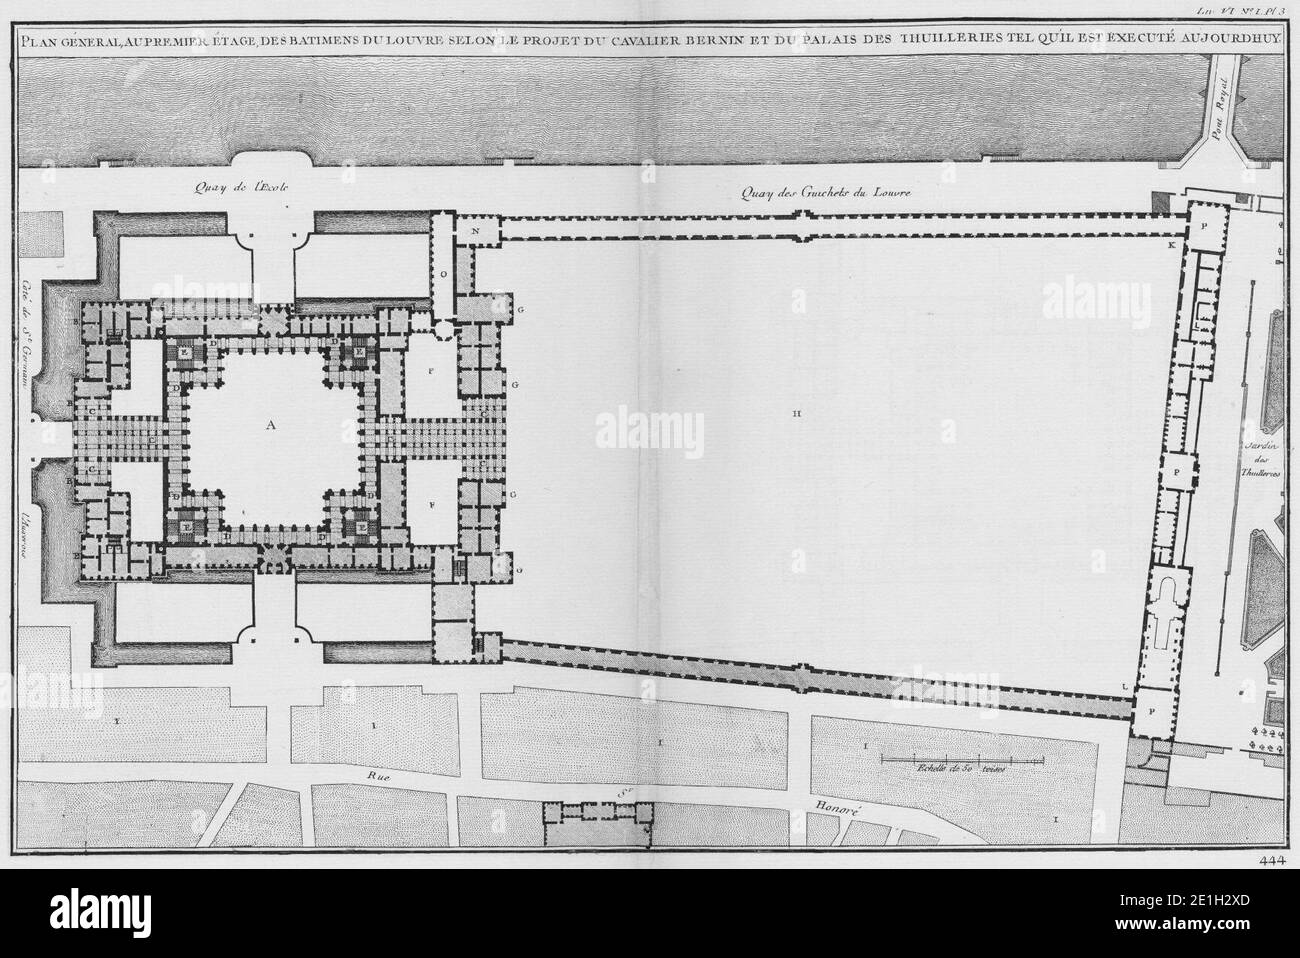 Louvre et Tuileries - Plan général suivant le projet de Bernin - Architecture françoise Tome4 Livre6 Pl3. Stock Photo